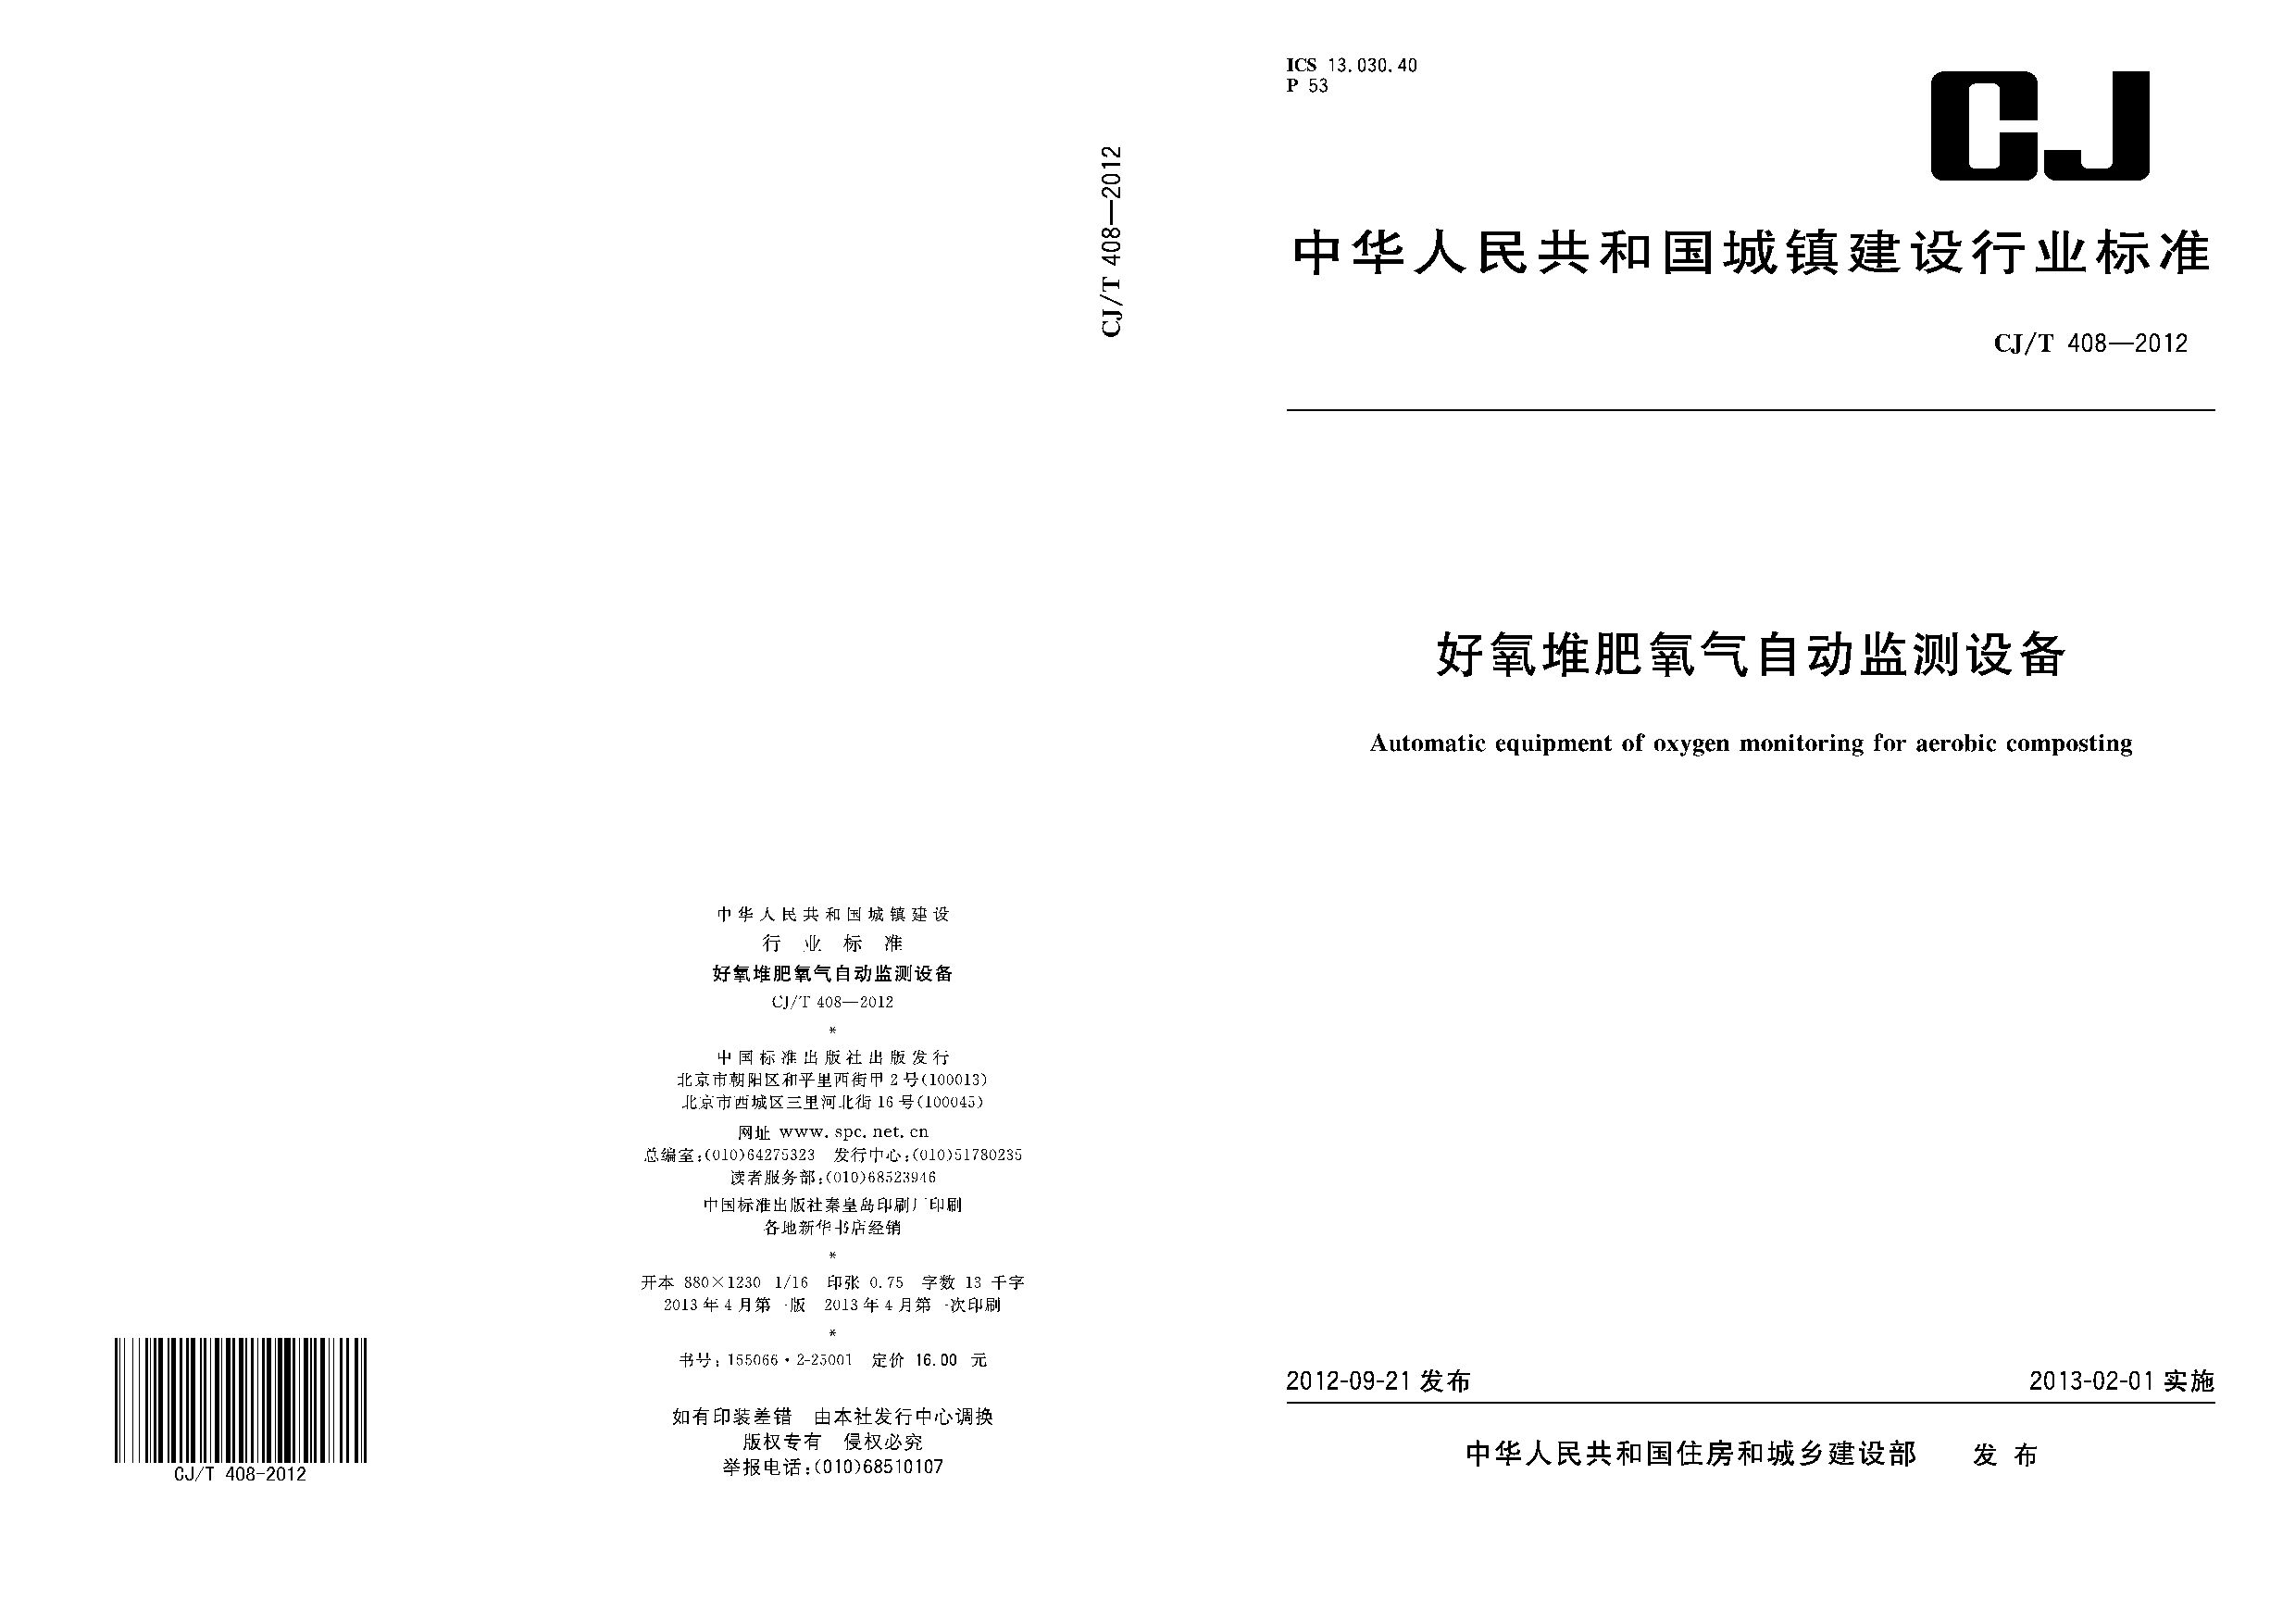 CJ/T 408-2012封面图